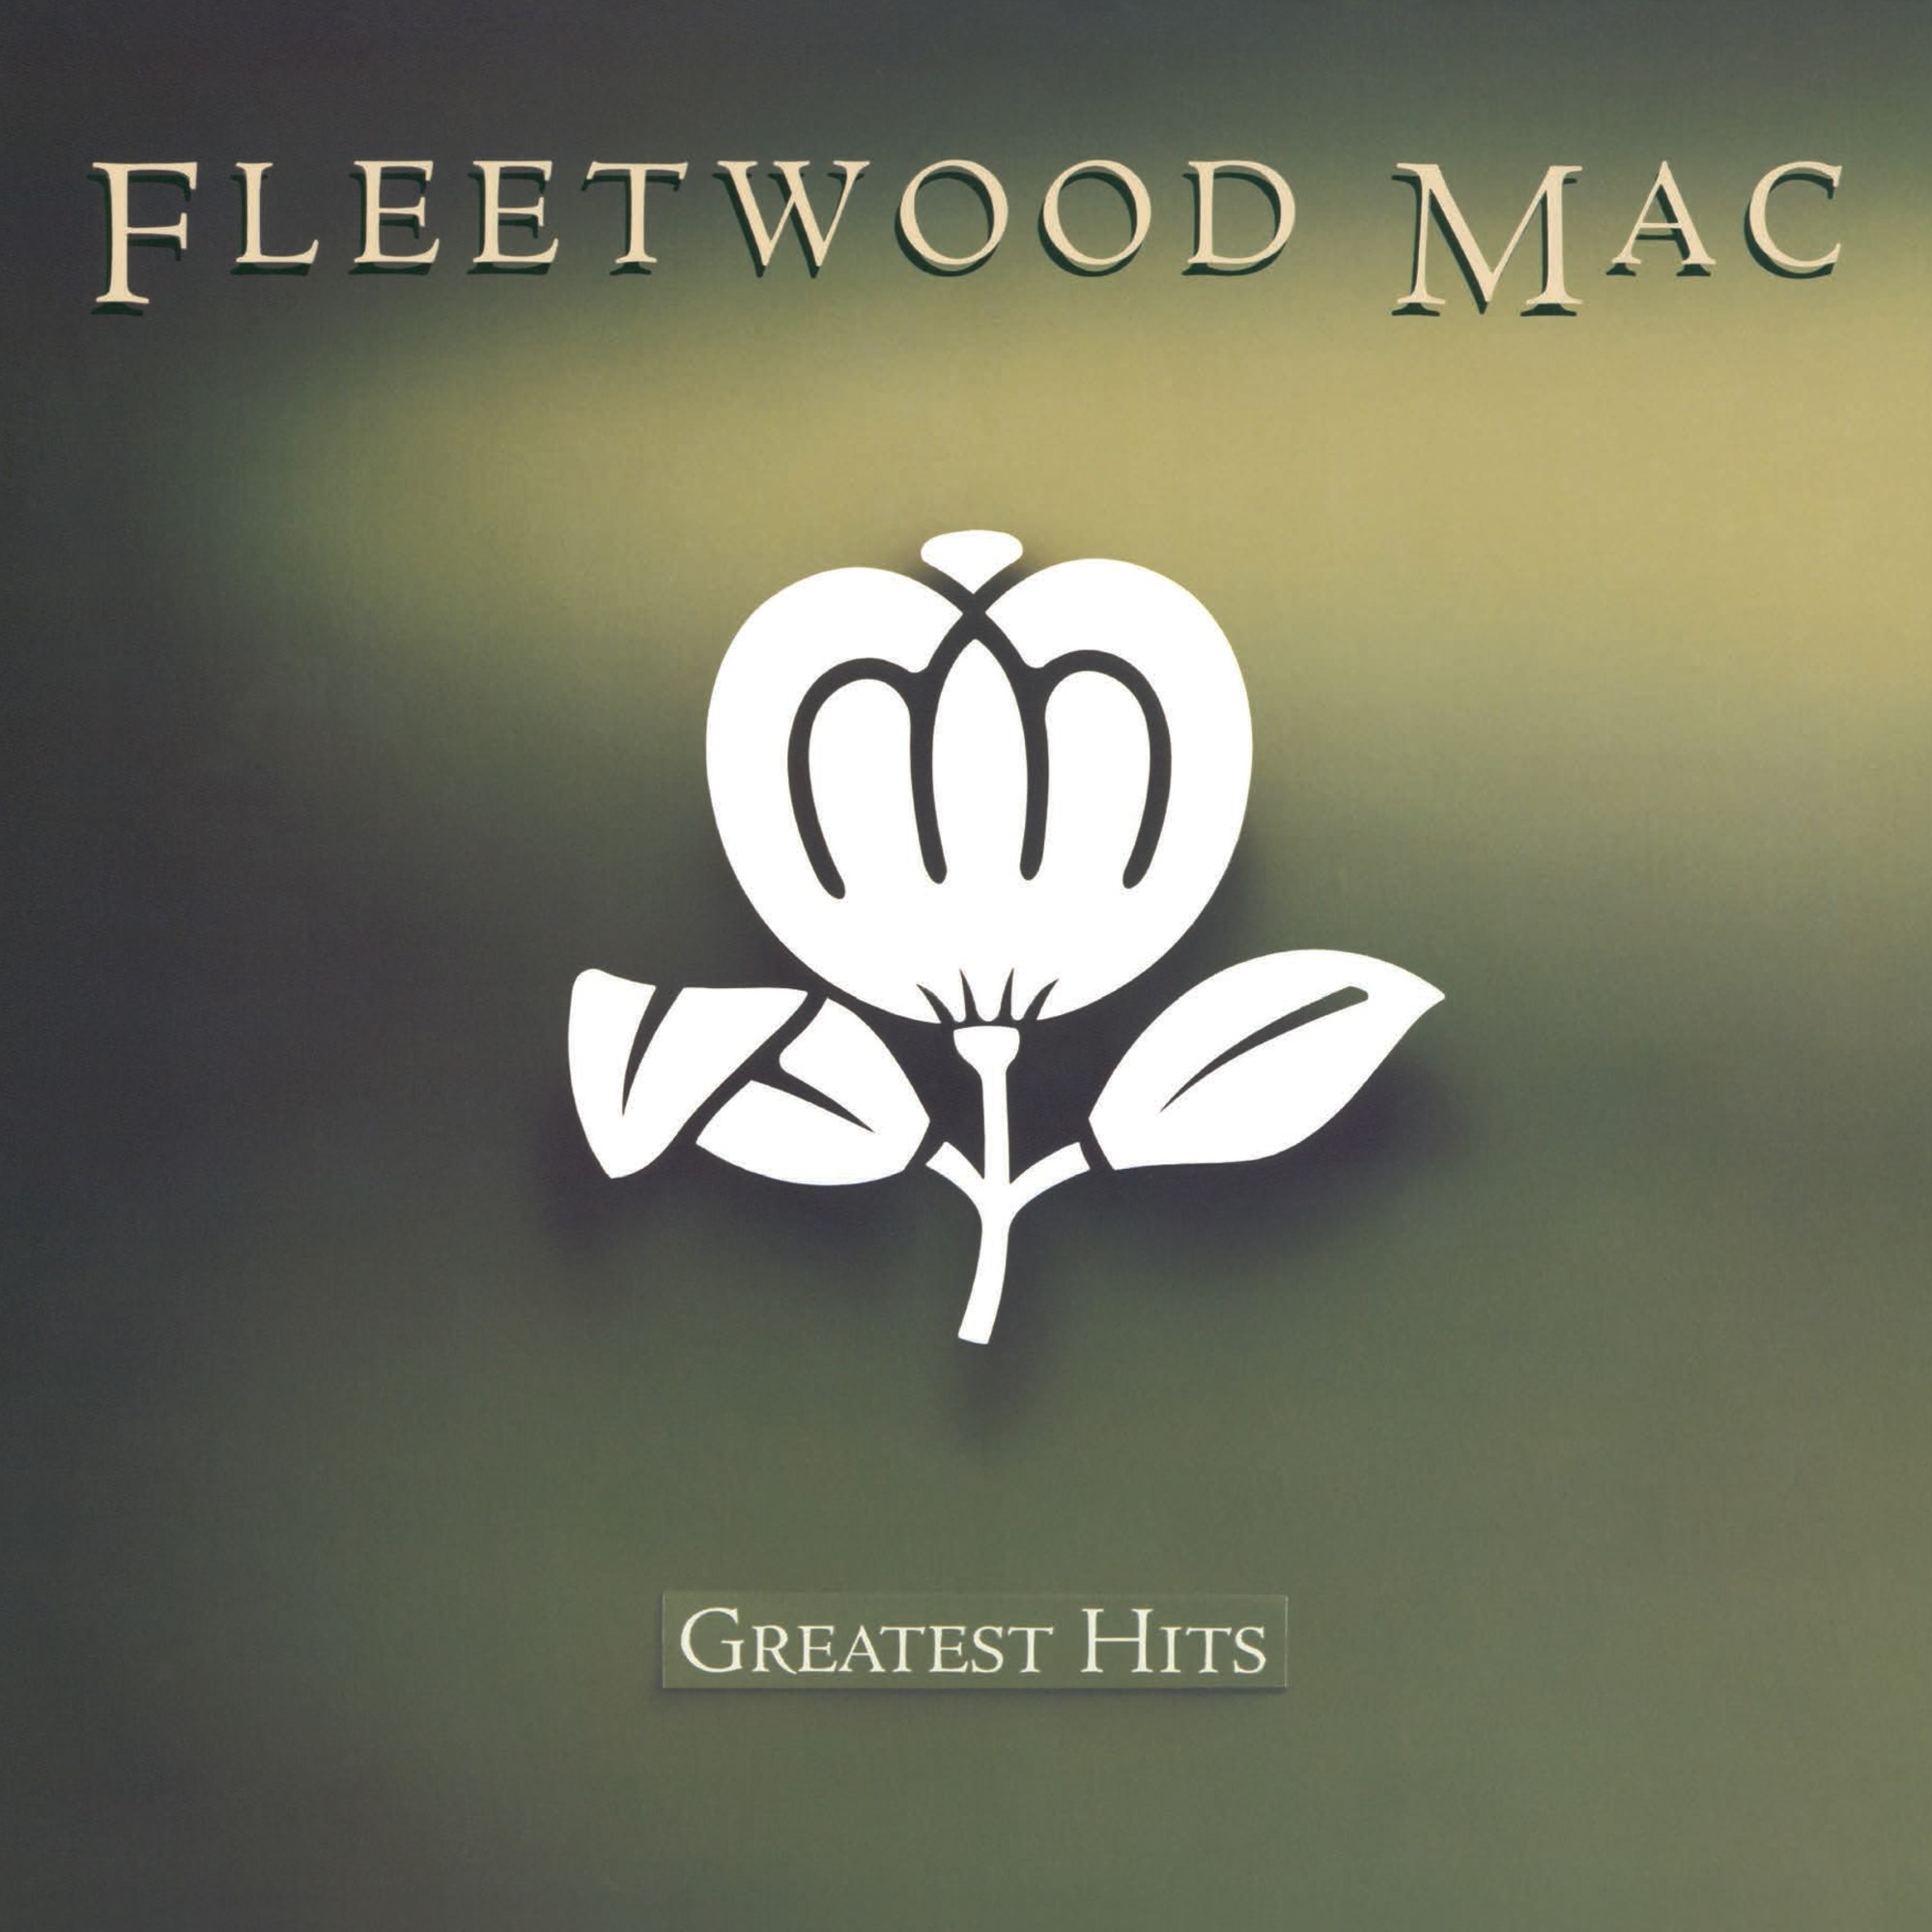 Greatest Hits|Fleetwood Mac